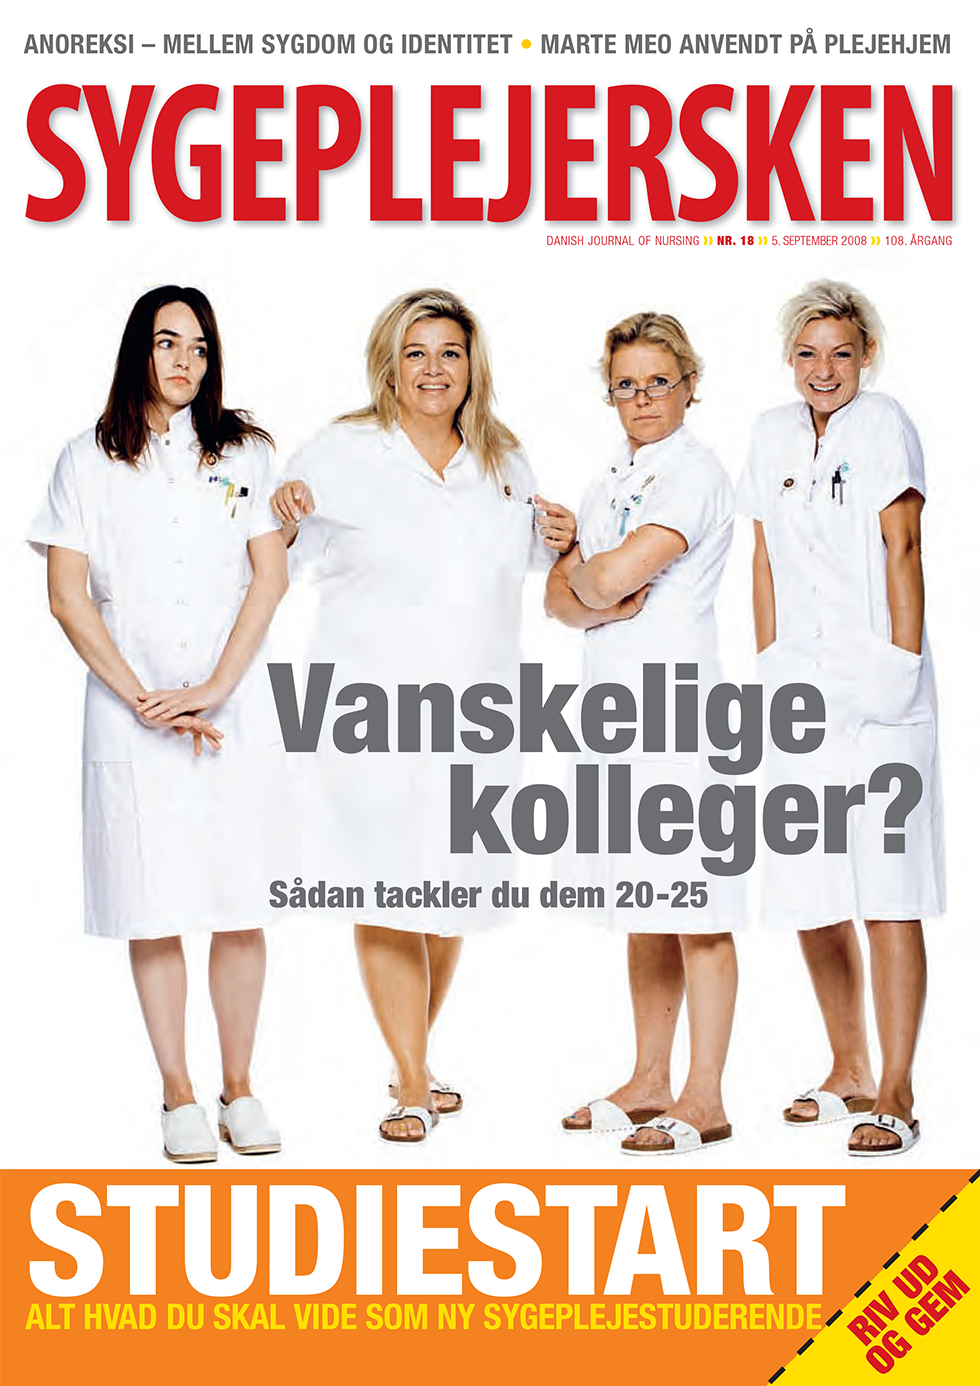 Sygeplejersken_2008_18 - magasinforsiden